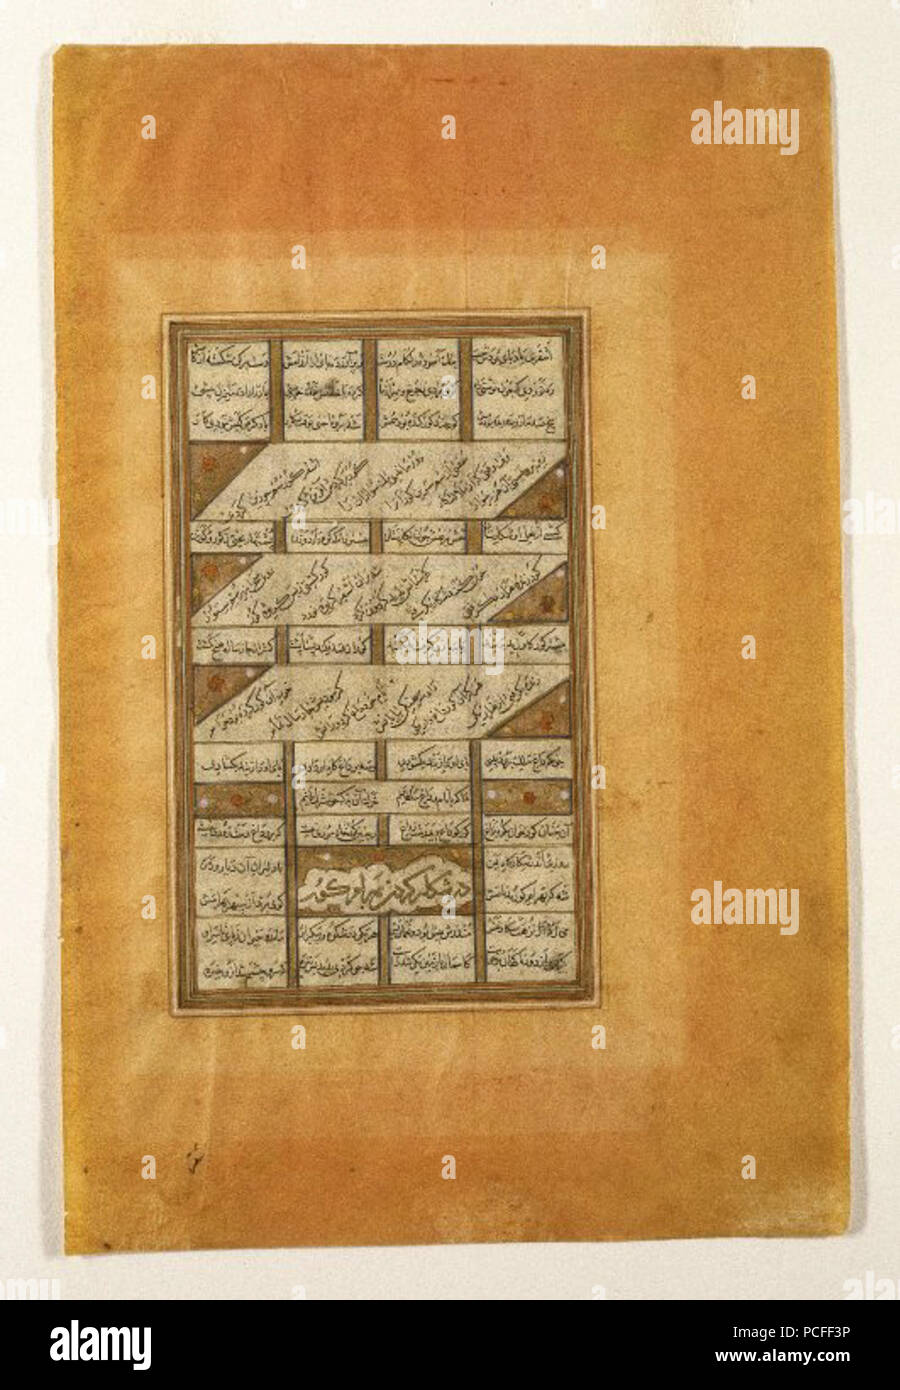 99 Brooklyn Museum - Bahram Gur bei der Jagd Seite aus der Haft paykar (Sieben Porträts) von einem Manuskript der Khamsa (Quintett) von Nizami (d. 1209) Stockfoto